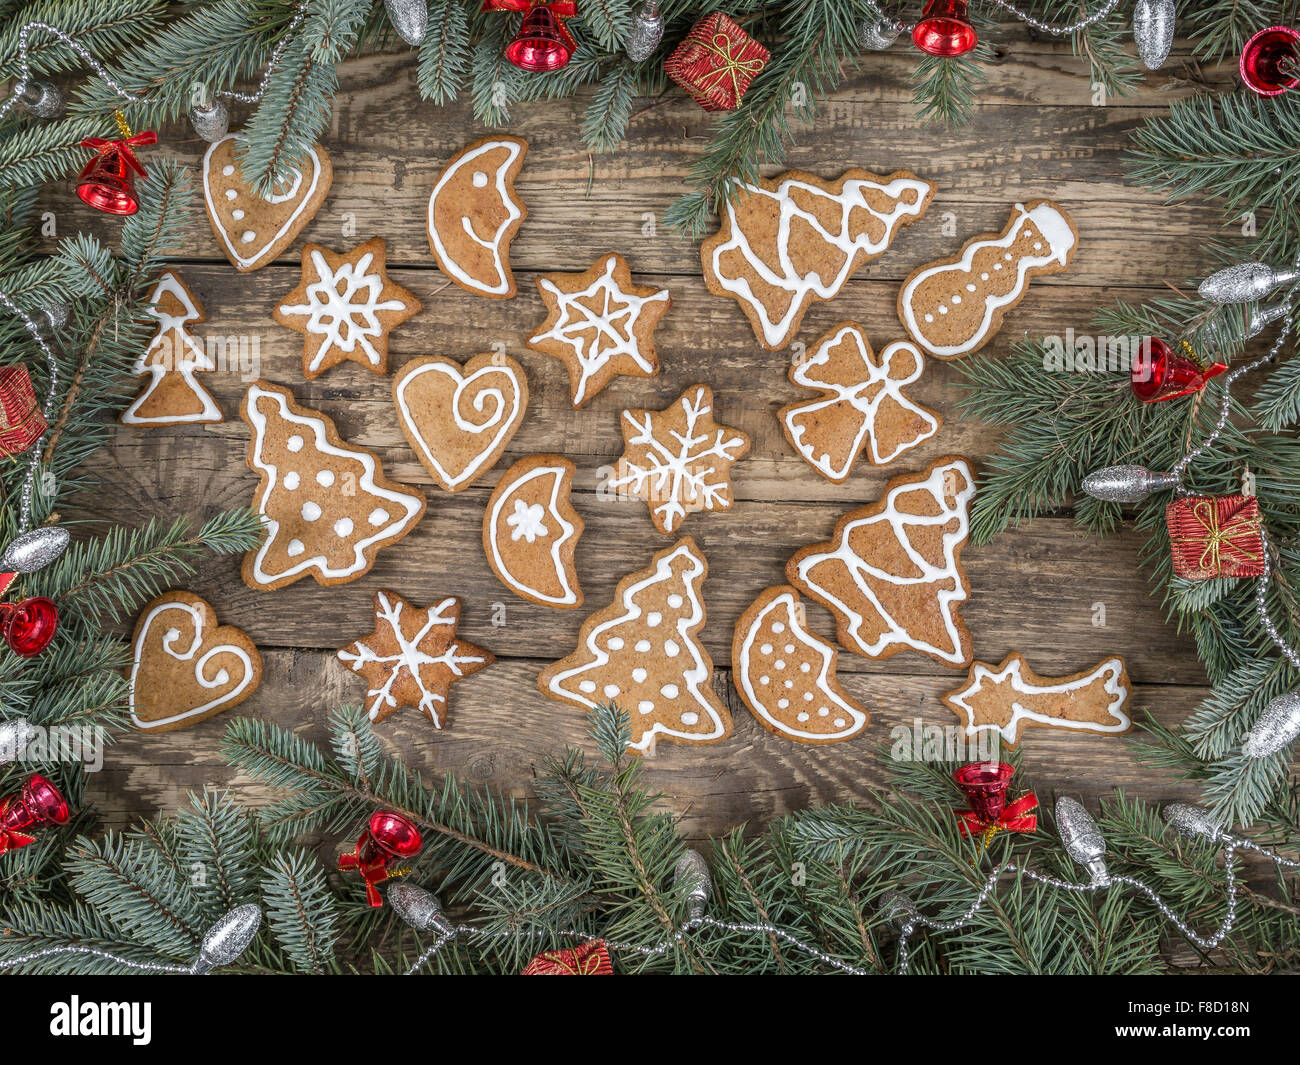 Weihnachten-Rahmen aus Fichte Zweige angeordnet auf rustikalen Holztafeln mit saisonalen Form Lebkuchen platziert Stockfoto